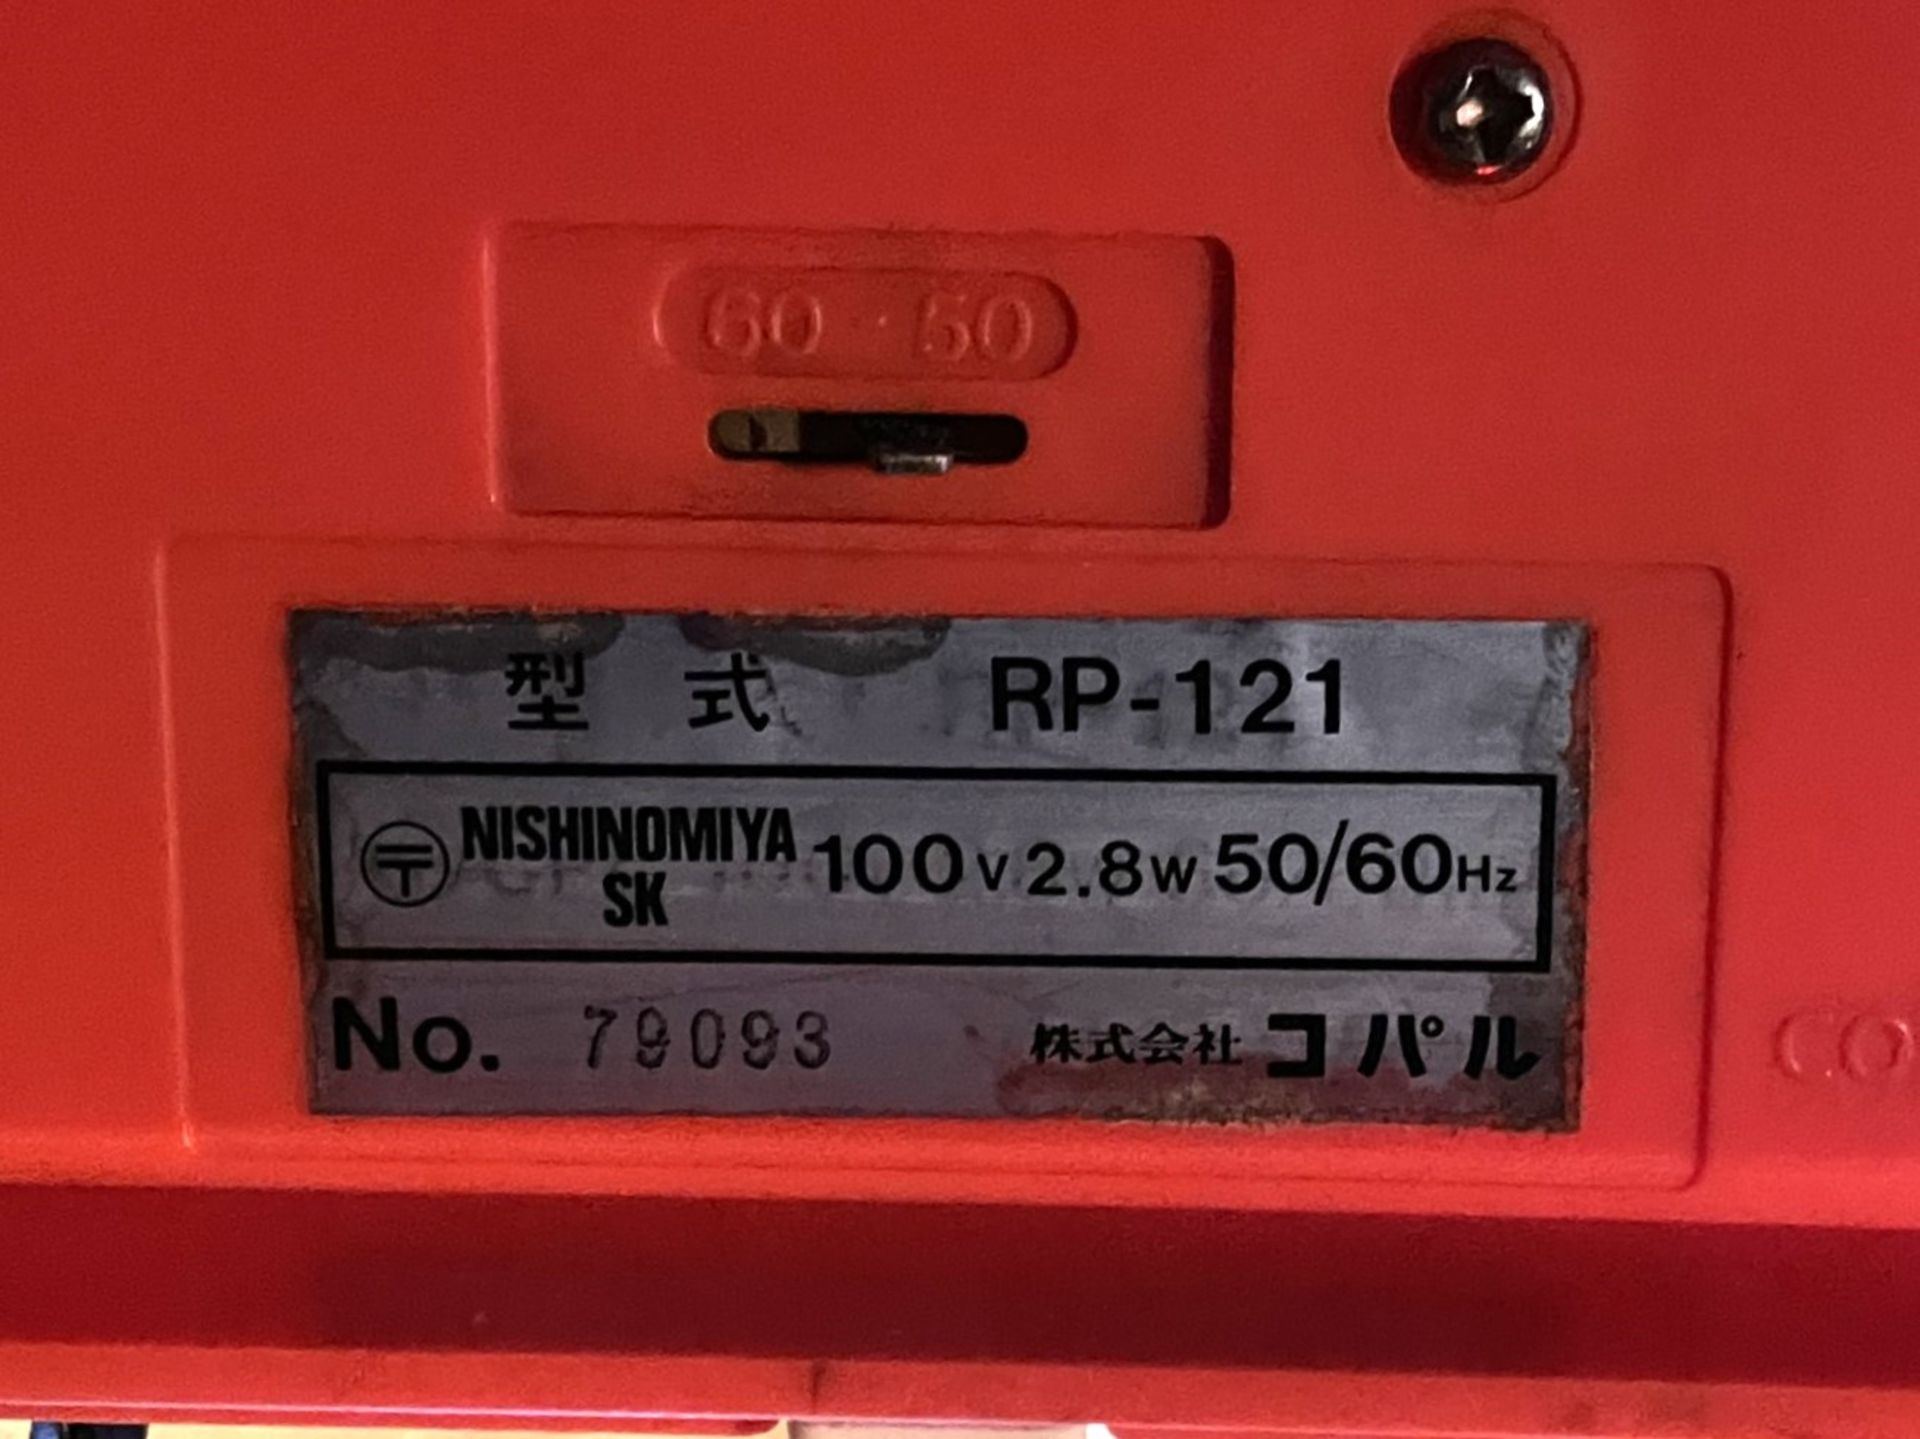 1 x Vintage Japanese Noshinomiya RP-121 Digital 50/60Hz Flip Alarm Clock With Beige/Red Body - Image 3 of 3